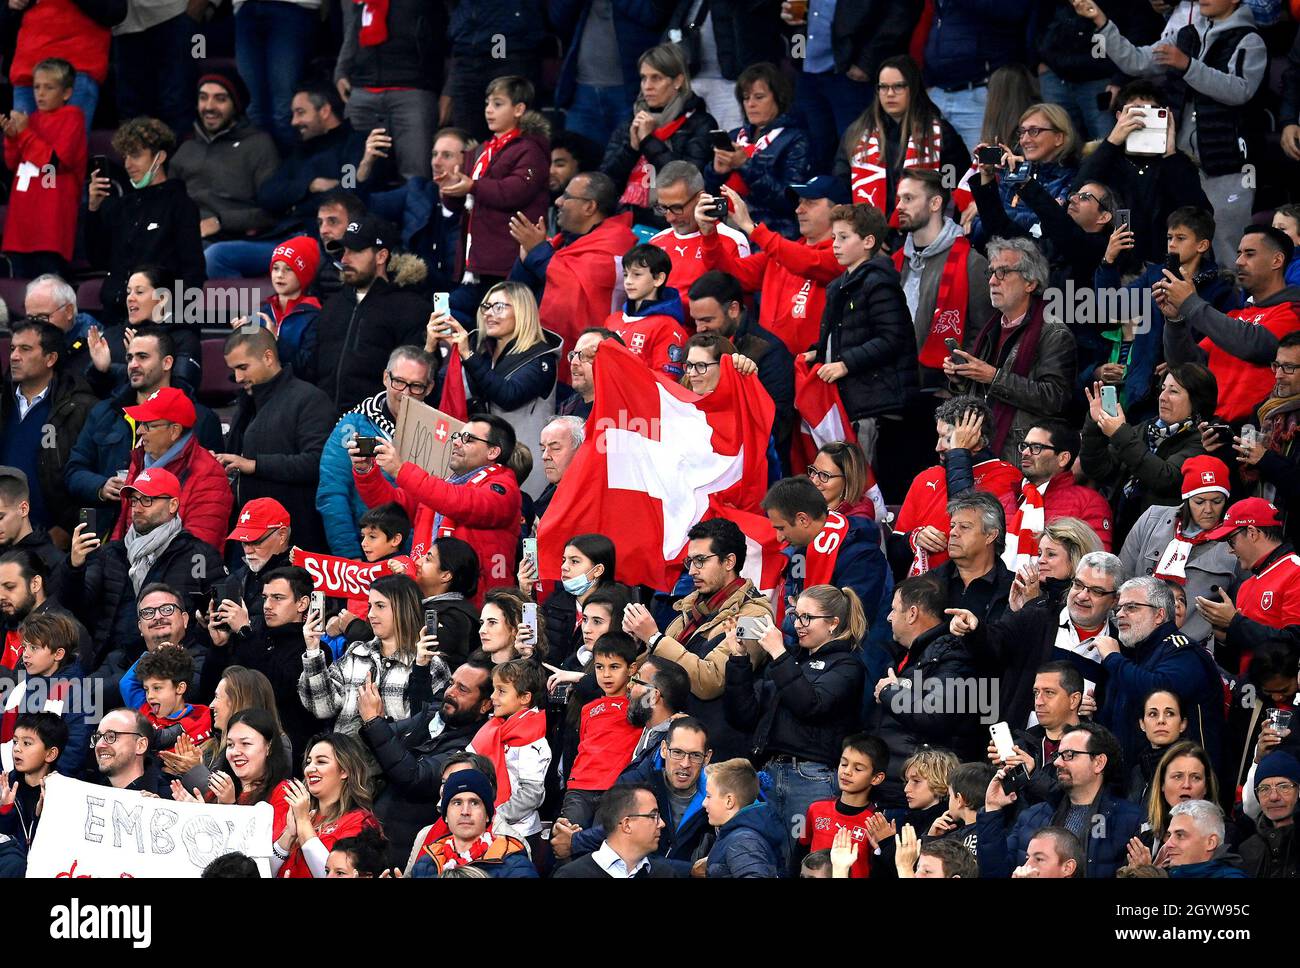 La Svizzera si è vista in piedi davanti alla gara di qualificazione della Coppa del mondo FIFA allo Stade de Geneve, in Svizzera. Data foto: Sabato 9 ottobre 2021. Foto Stock